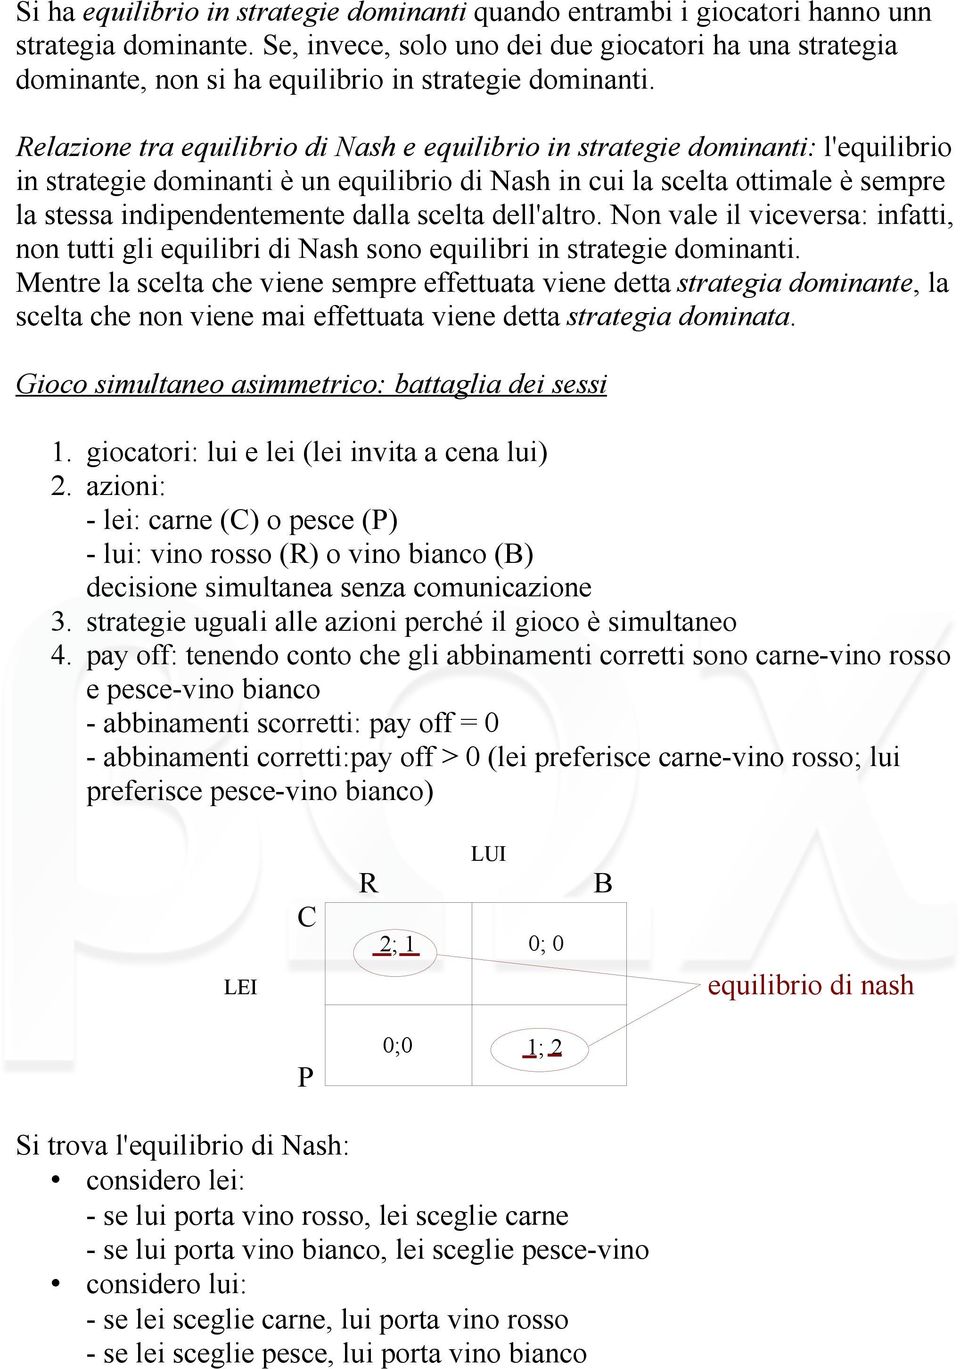 Relazione tra equilibrio di Nash e equilibrio in strategie dominanti: l'equilibrio in strategie dominanti è un equilibrio di Nash in cui la scelta ottimale è sempre la stessa indipendentemente dalla